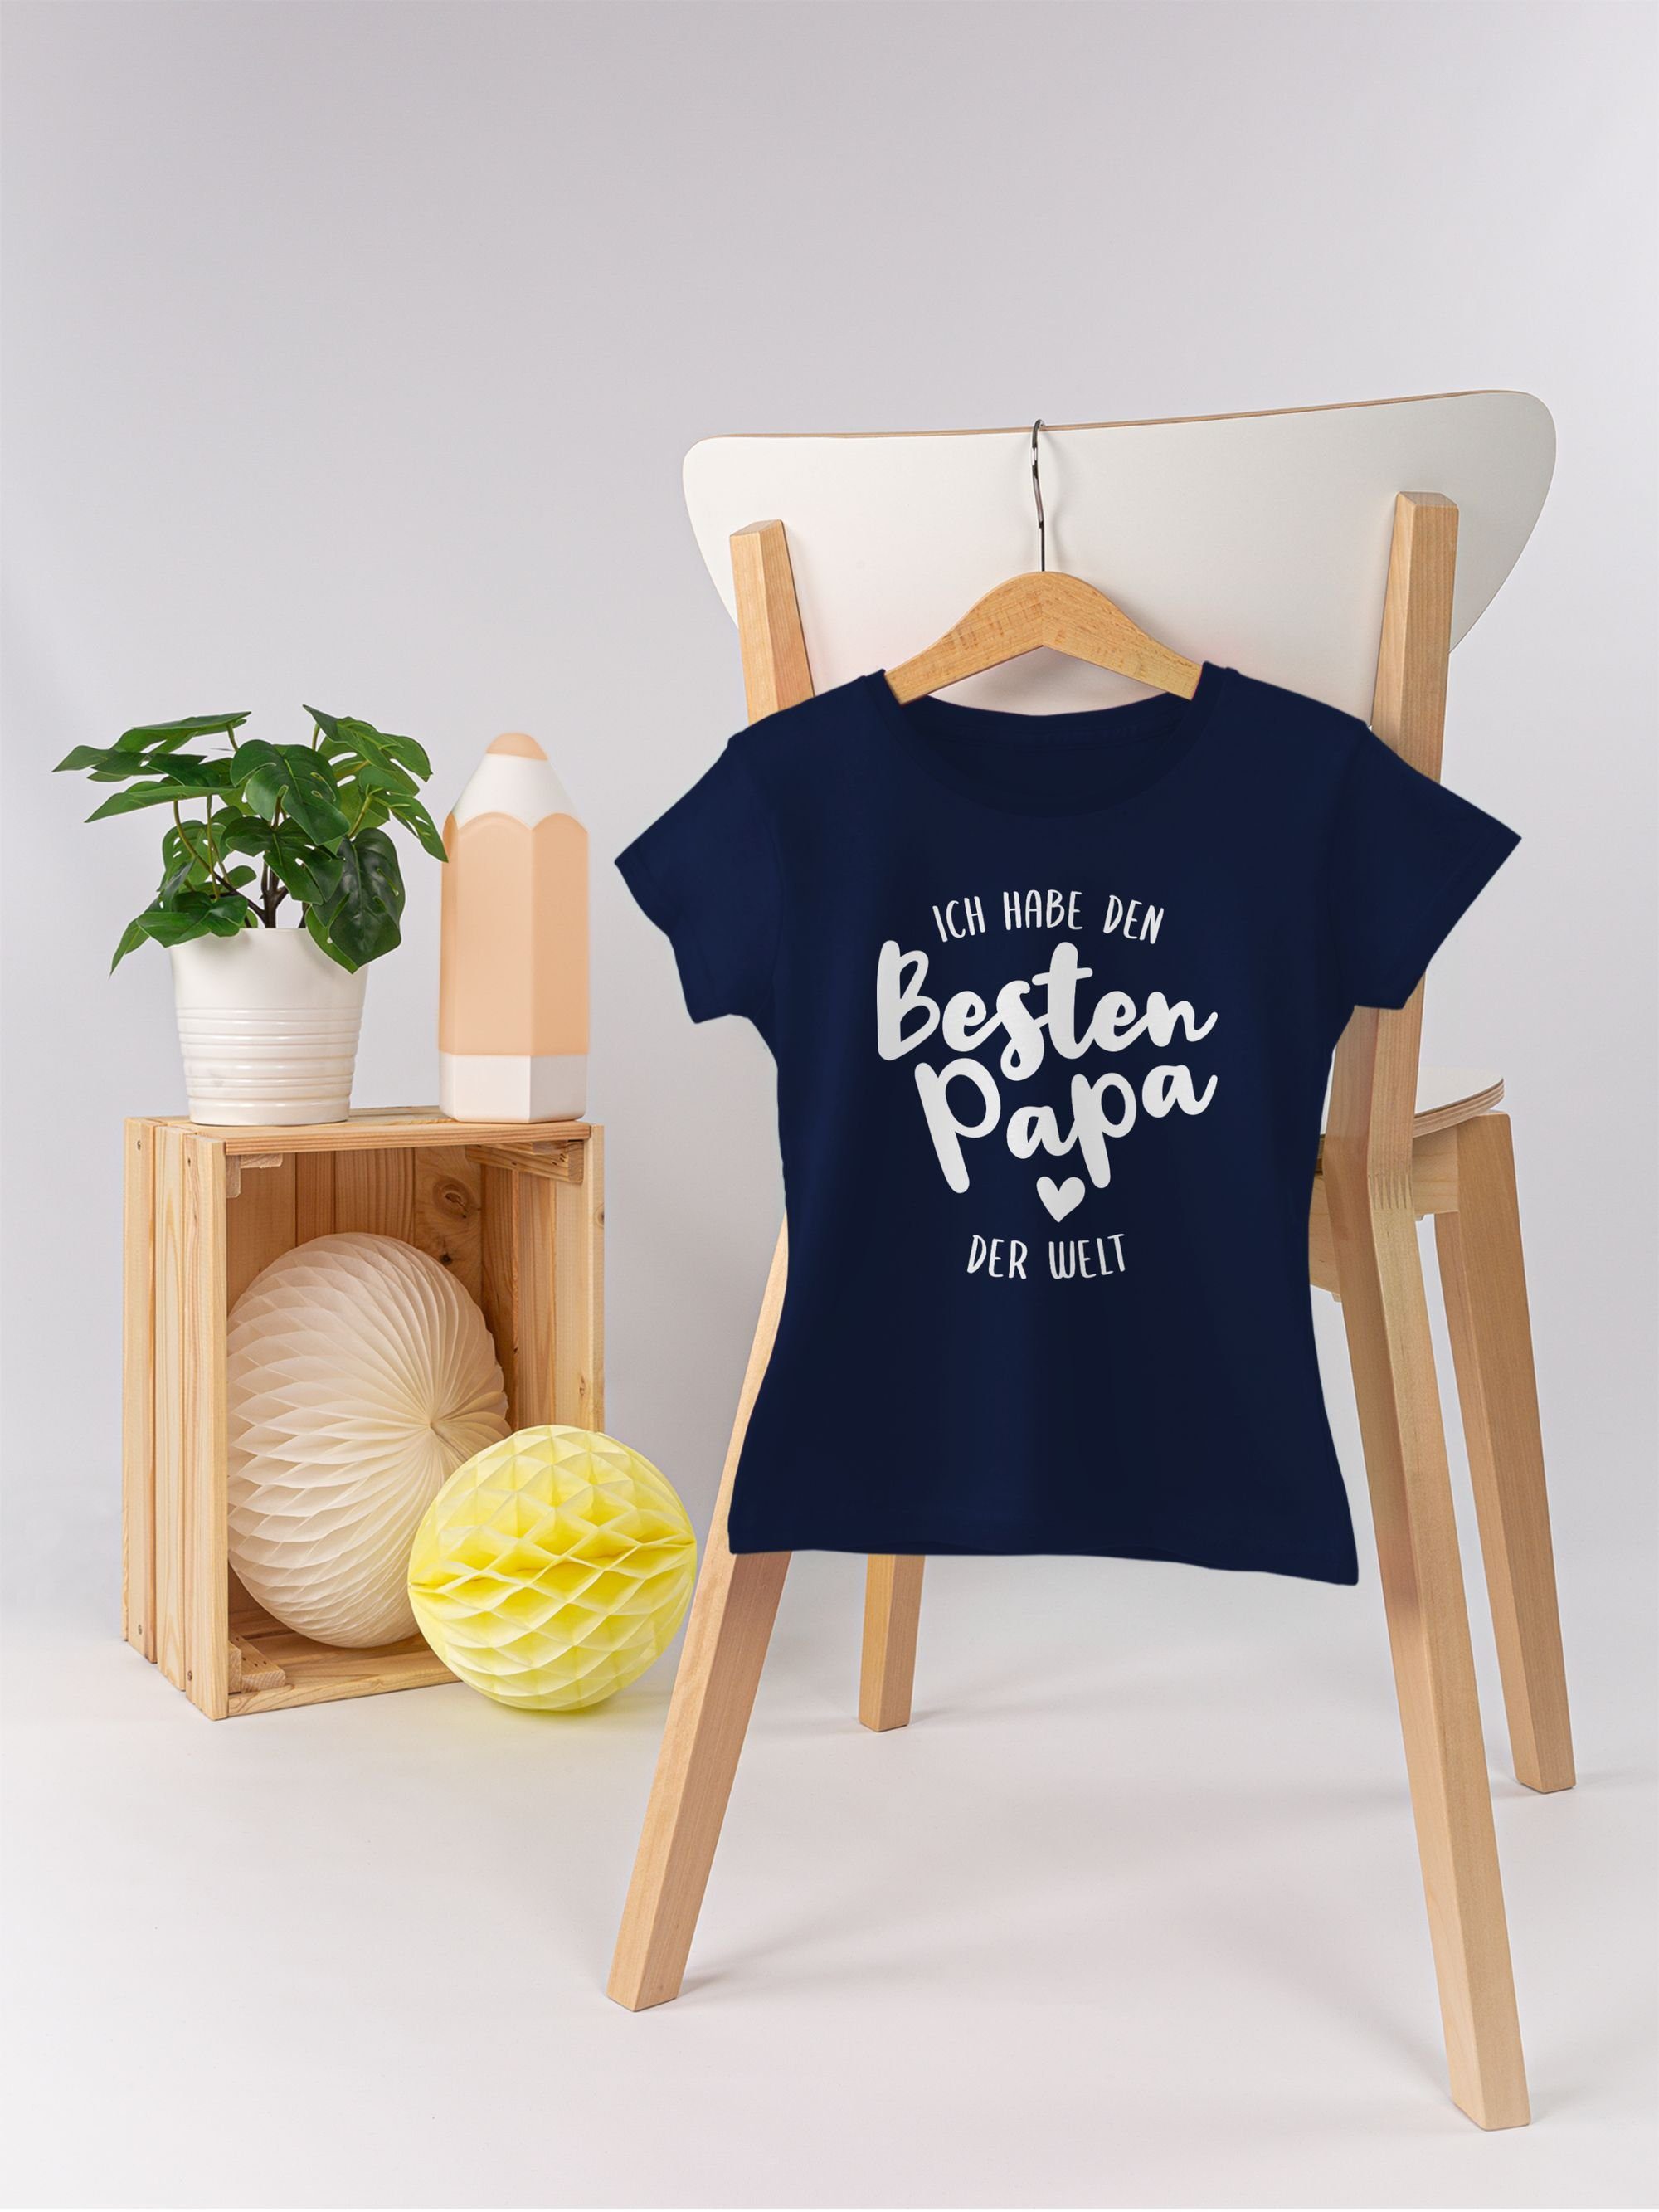 T-Shirt habe Welt Papa den Ich Papa Shirtracer für Vatertag der Dunkelblau besten 3 Geschenk